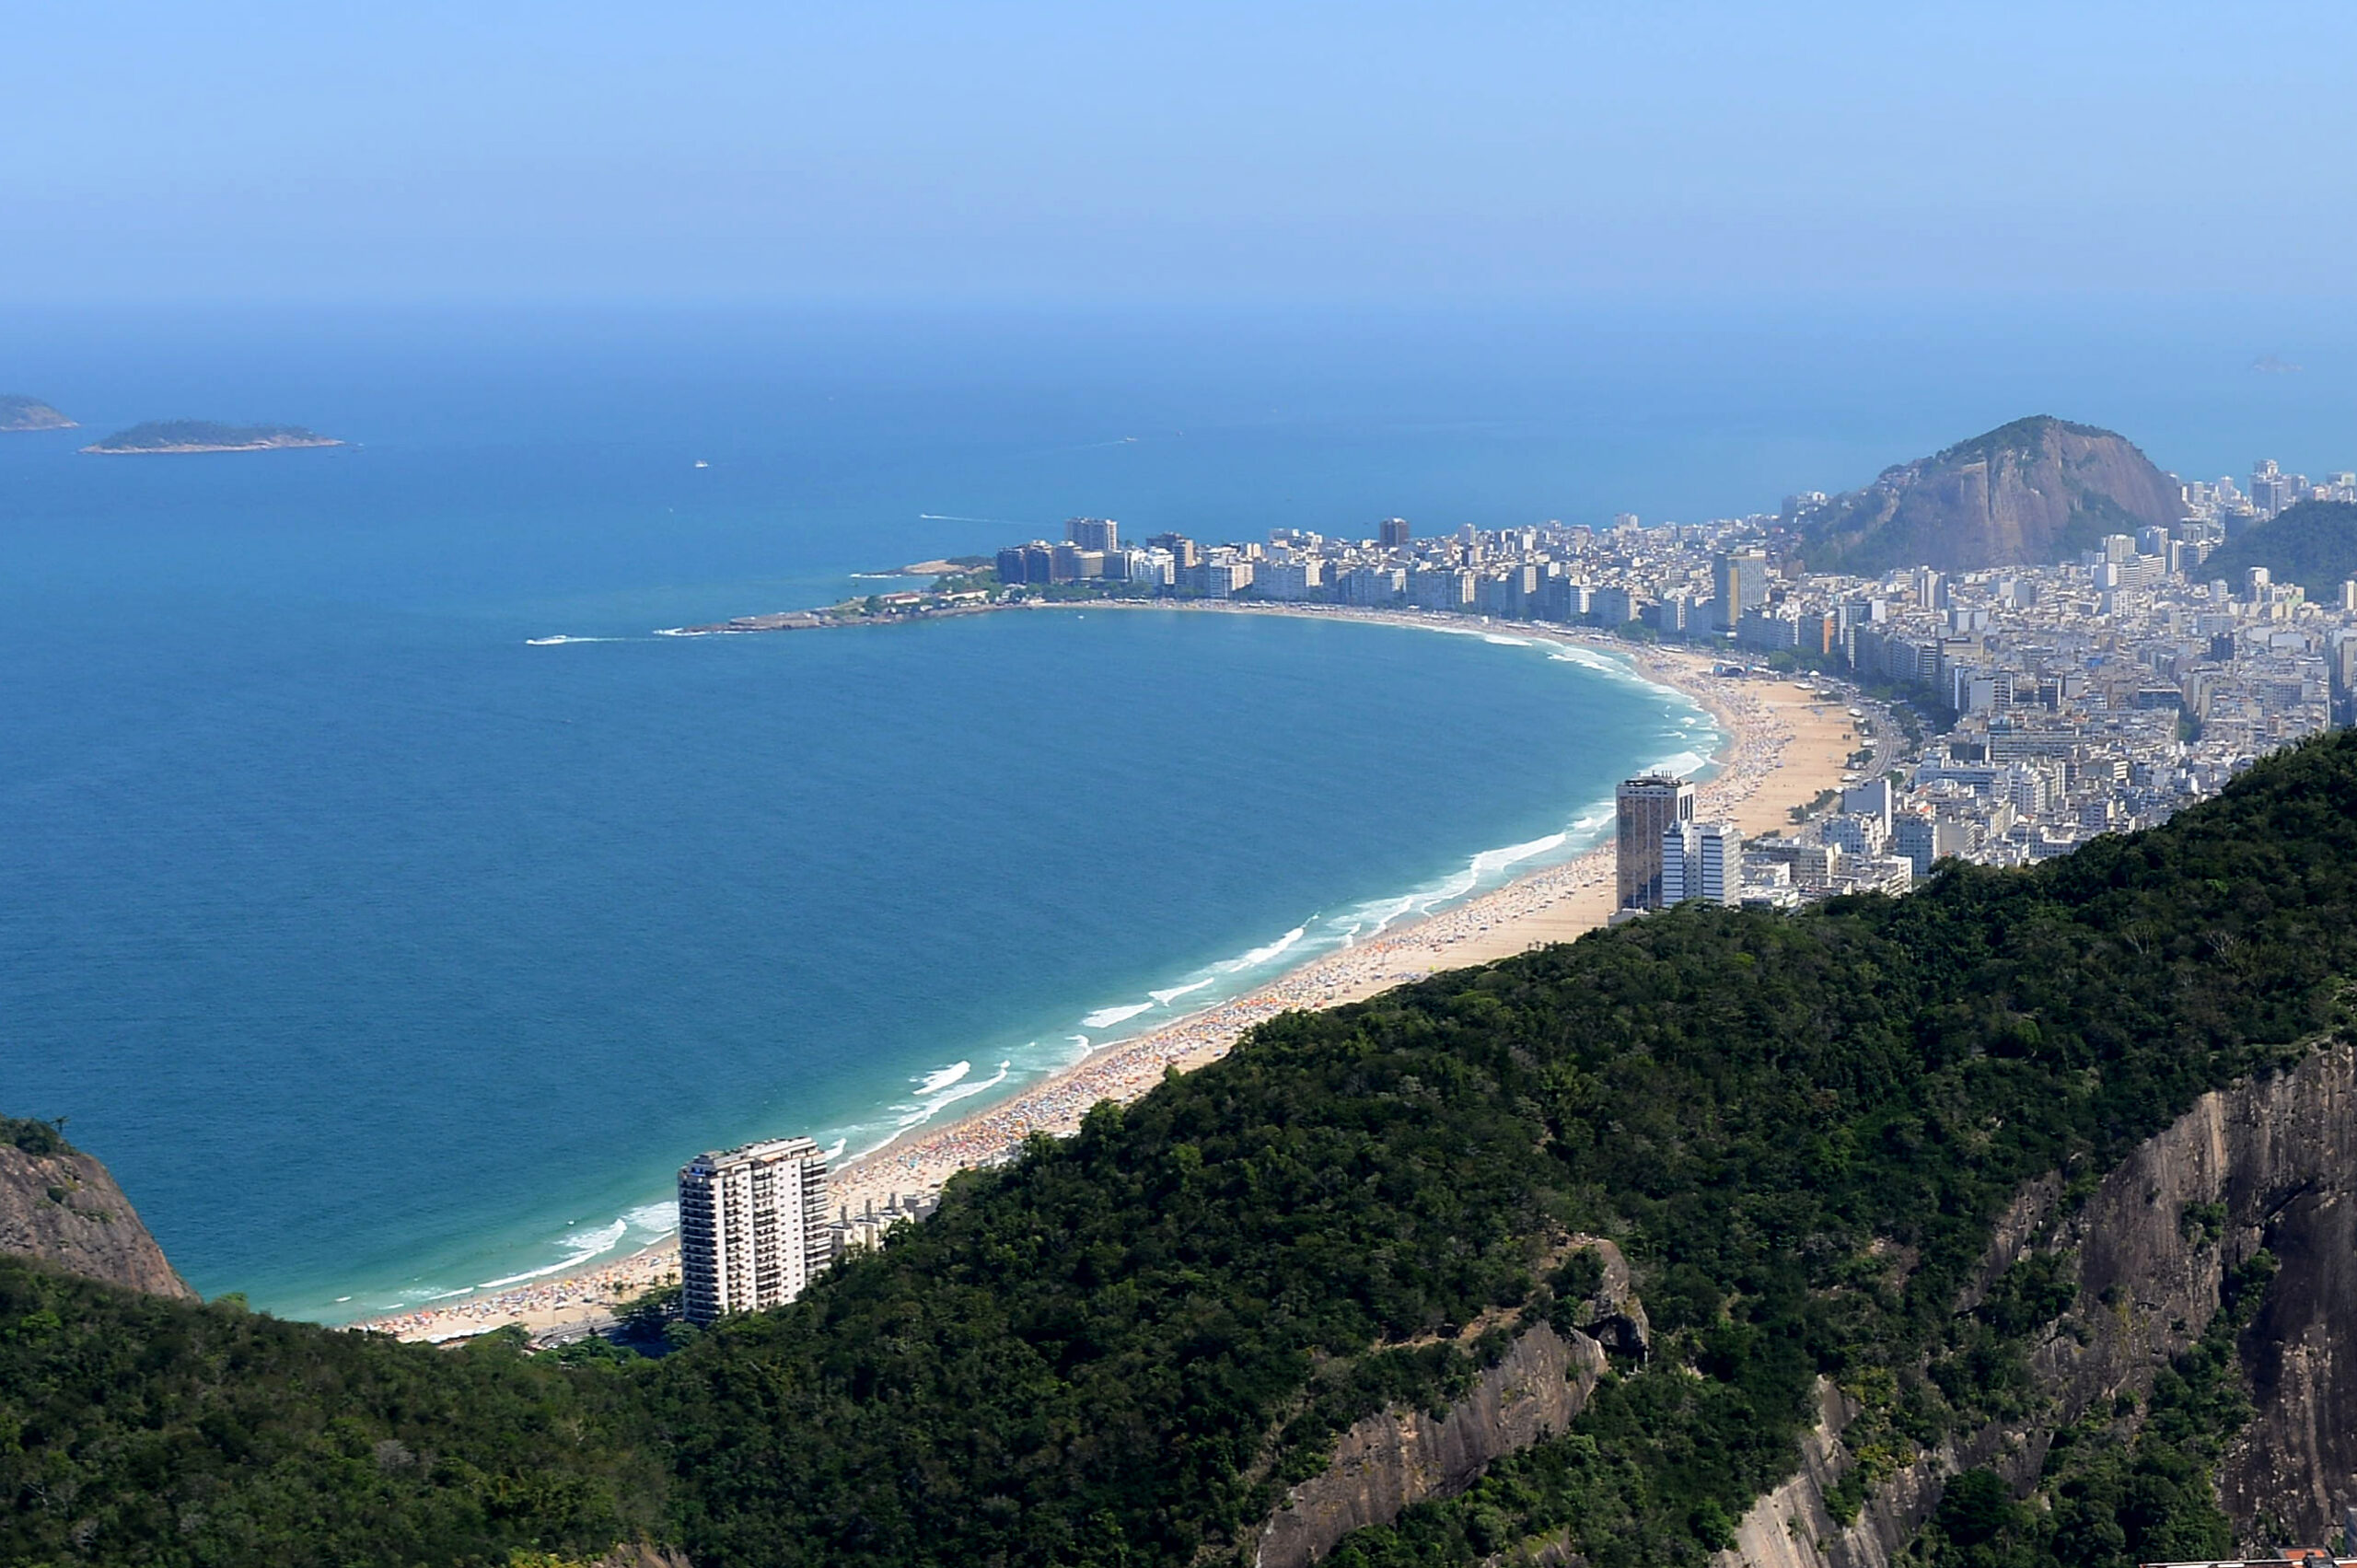 Detectores de metais, canhões de luz na areia e grades móveis vão reforçar segurança do Réveillon de Copacabana